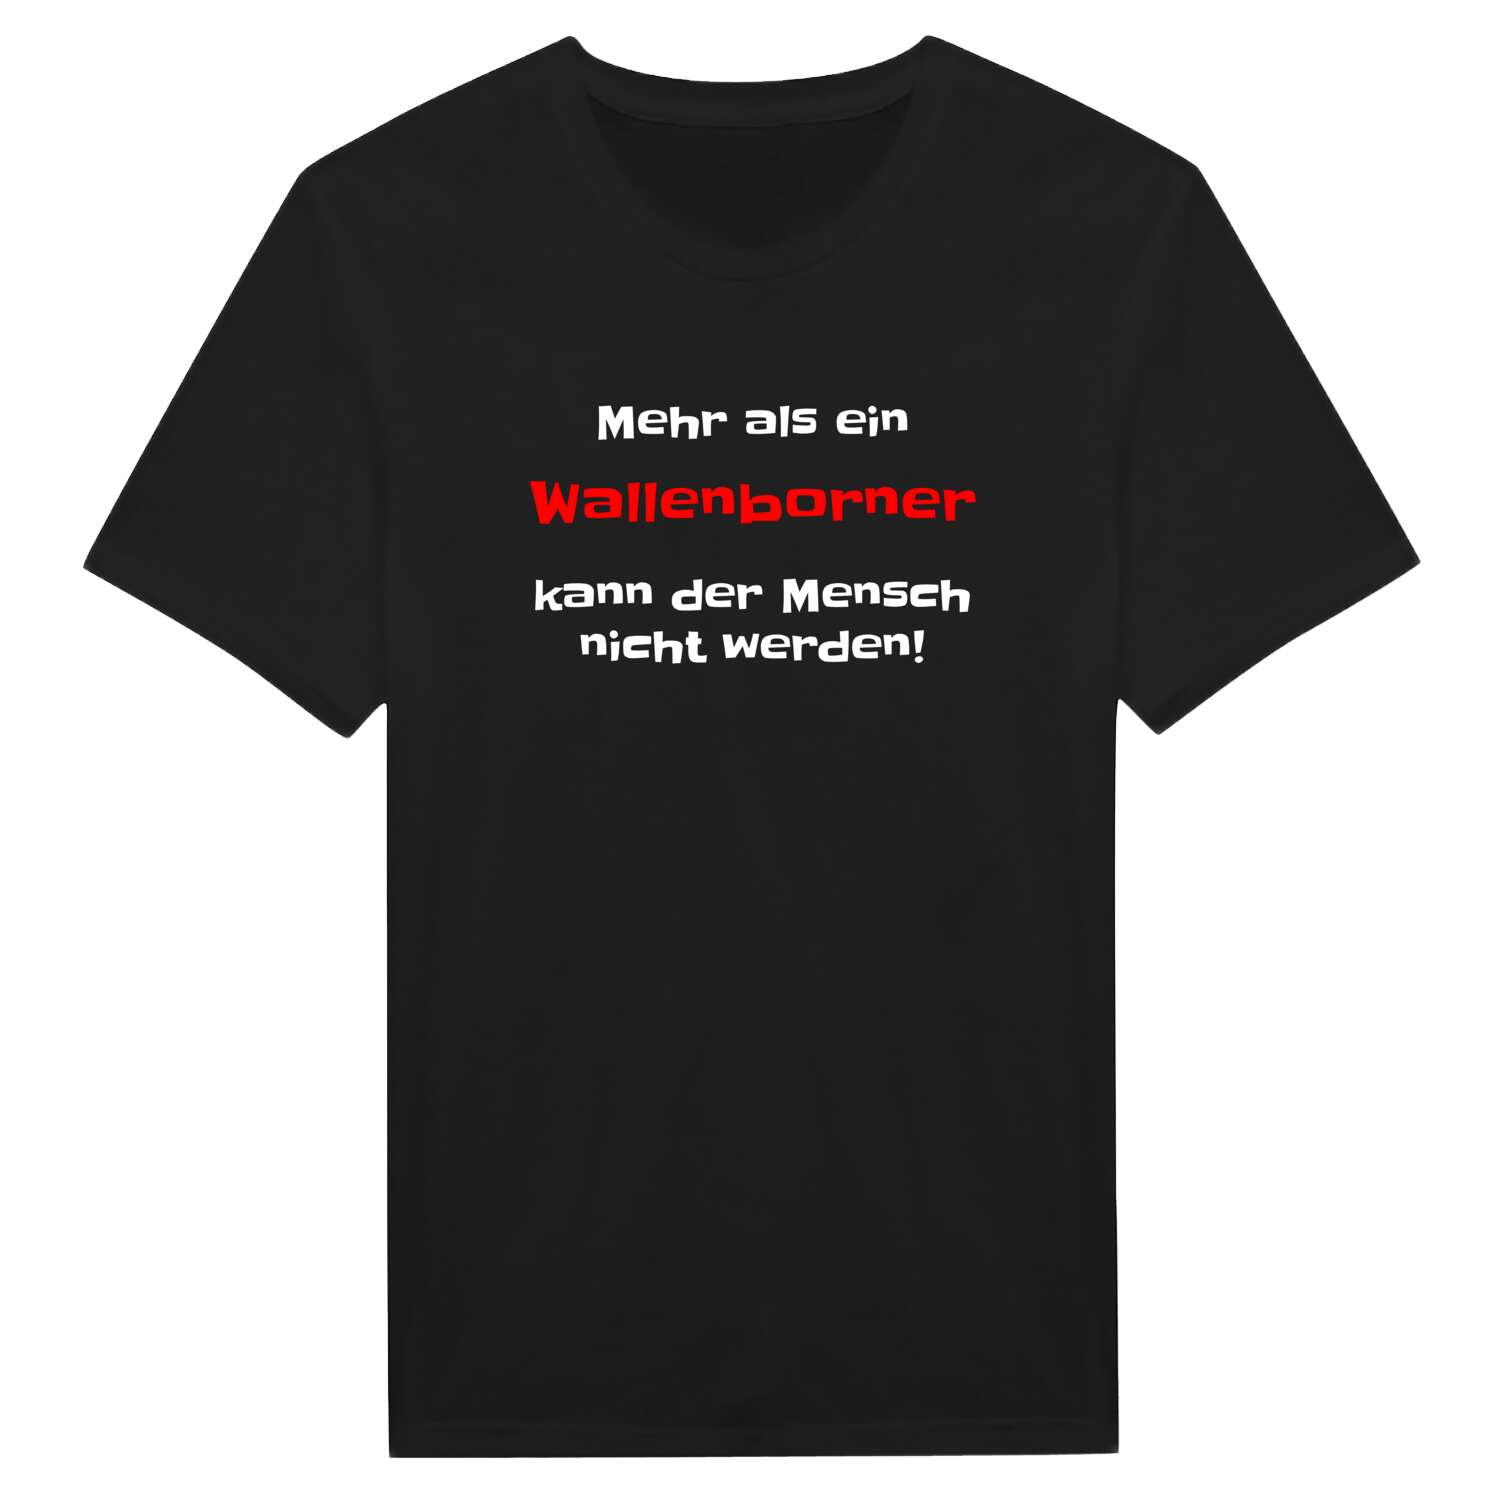 Wallenborn T-Shirt »Mehr als ein«